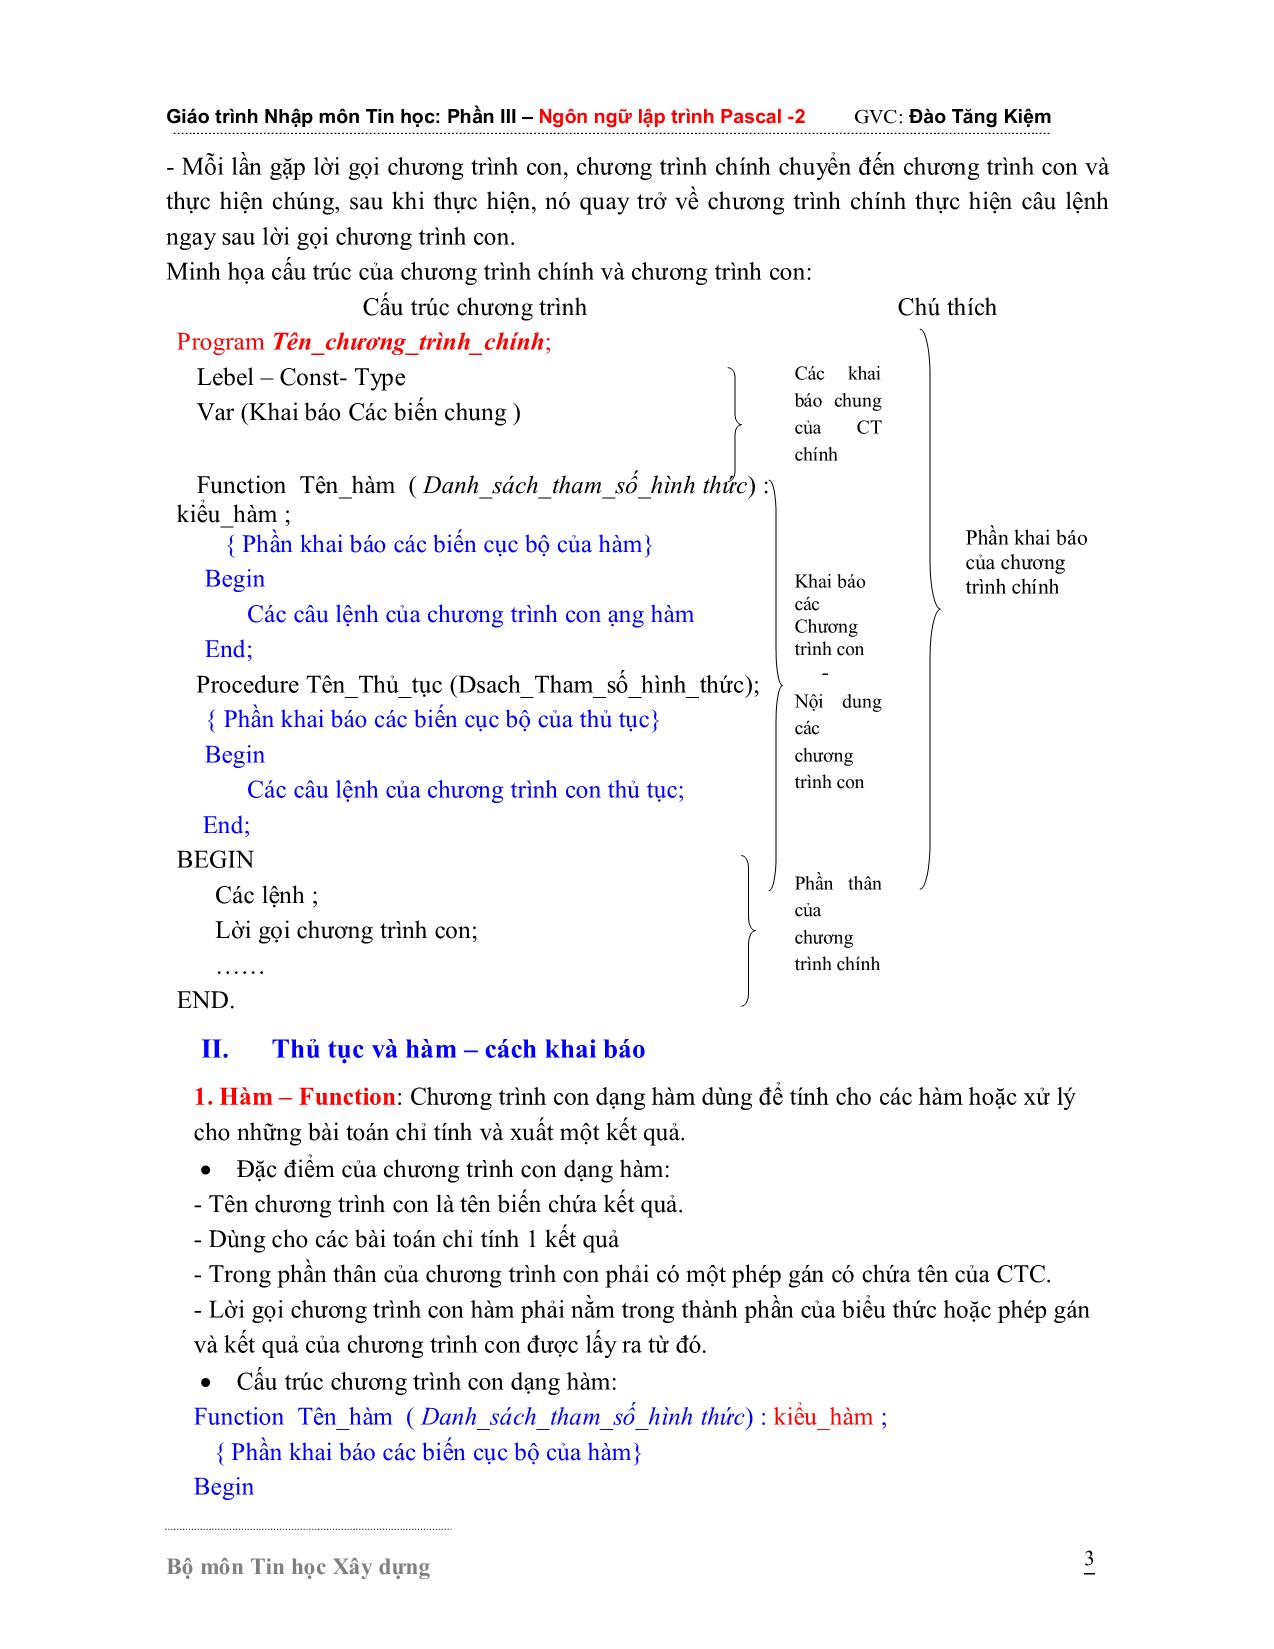 Giáo trình Nhập môn Tin học - Phần 3: Ngôn ngữ lập trình Pascal 2 trang 3